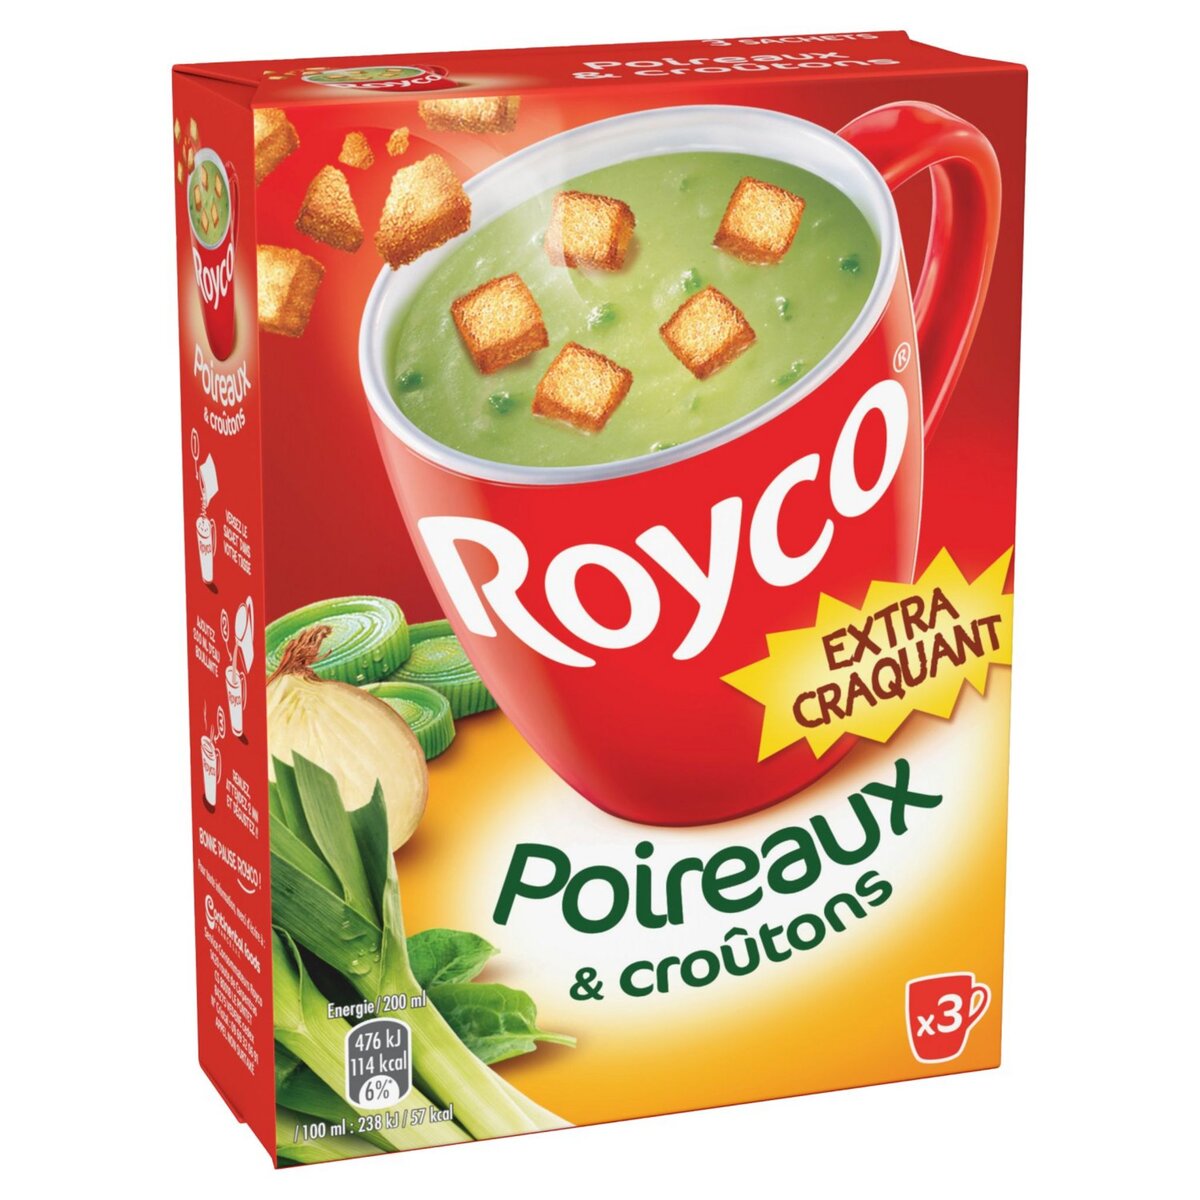 ROYCO Soupe instantanée poireaux et croûtons extra craquant 3 sachets 60cl